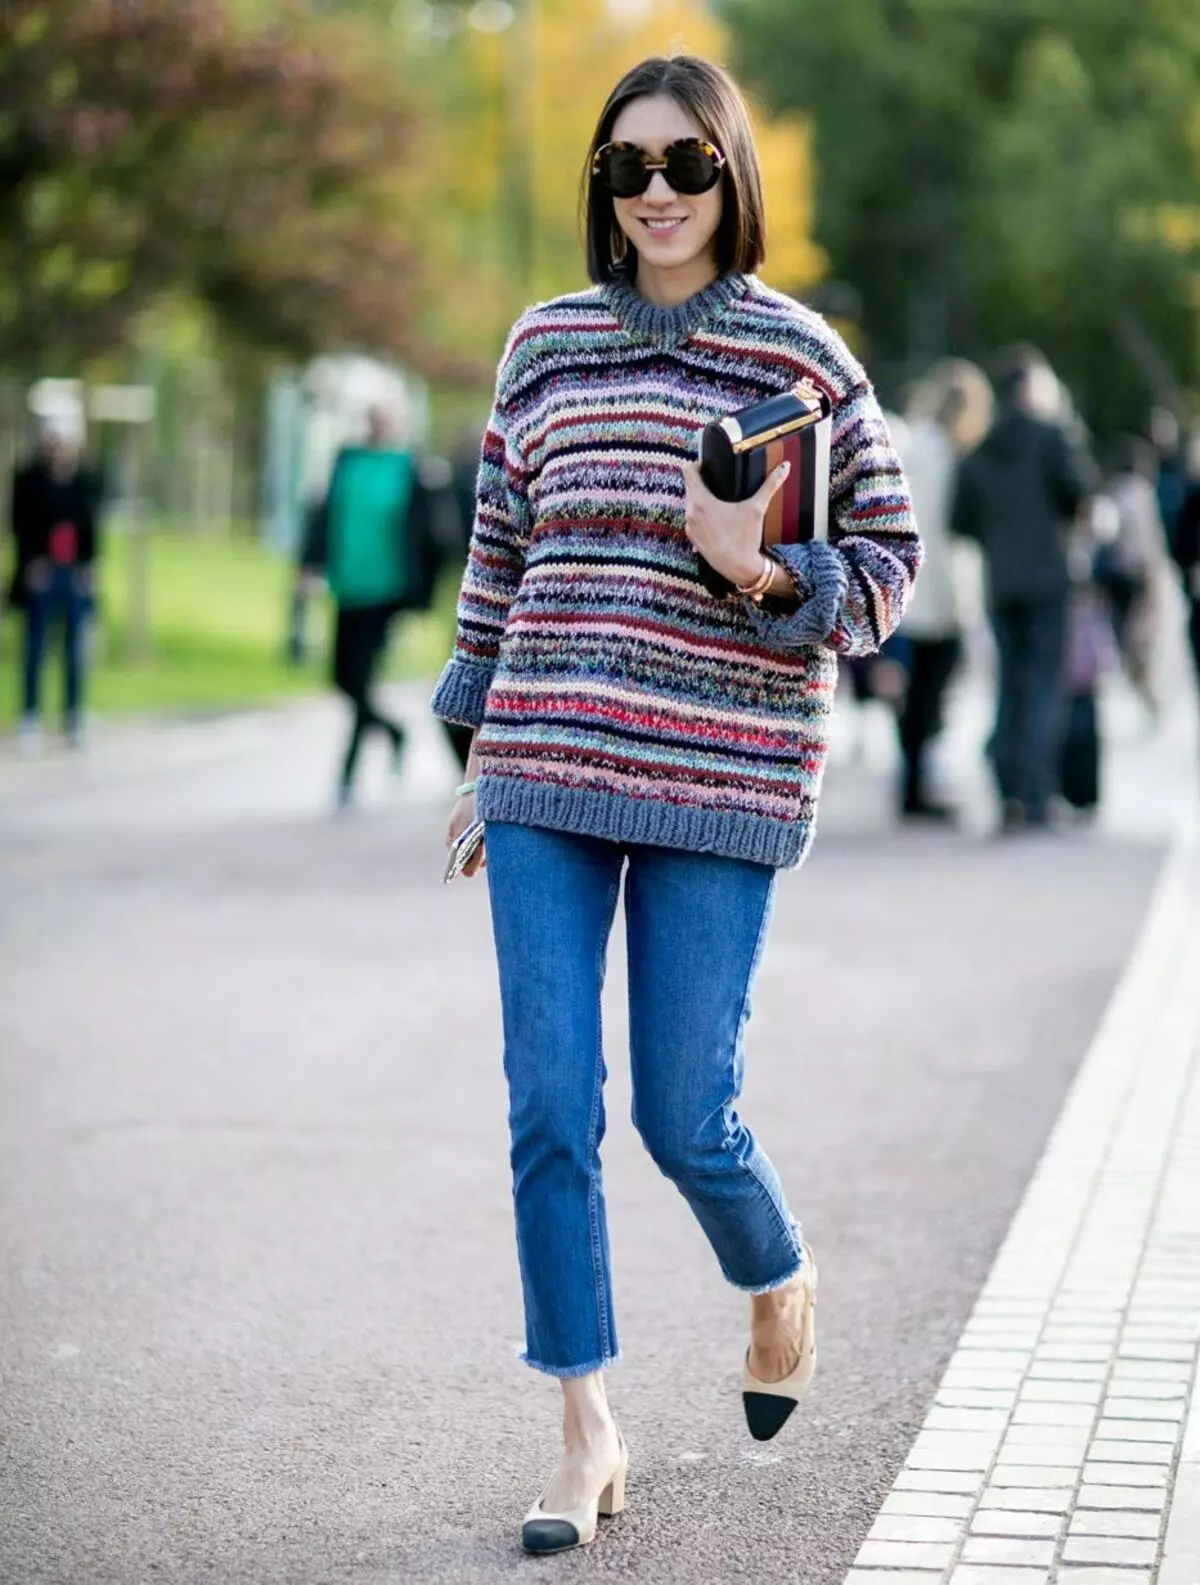 Áo len nữ (192 ảnh): áo len thời trang 2021, trắng, đen, dài, với cổ họng, cashmere, ấm, dệt kim, với bím tóc 1052_191